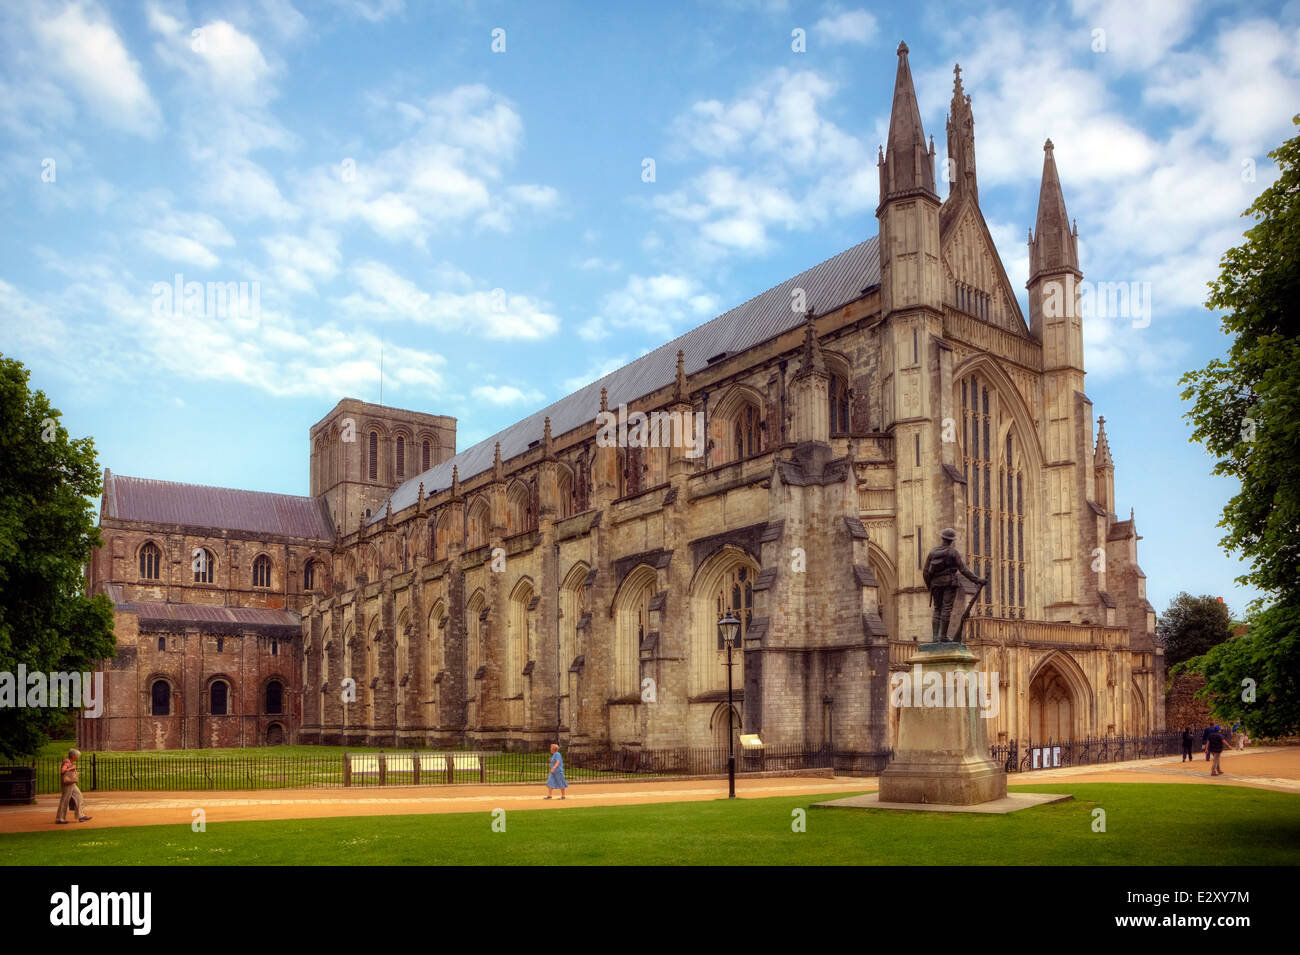 La cathédrale de Winchester, Winchester, Hampshire, Angleterre, Royaume-Uni Banque D'Images